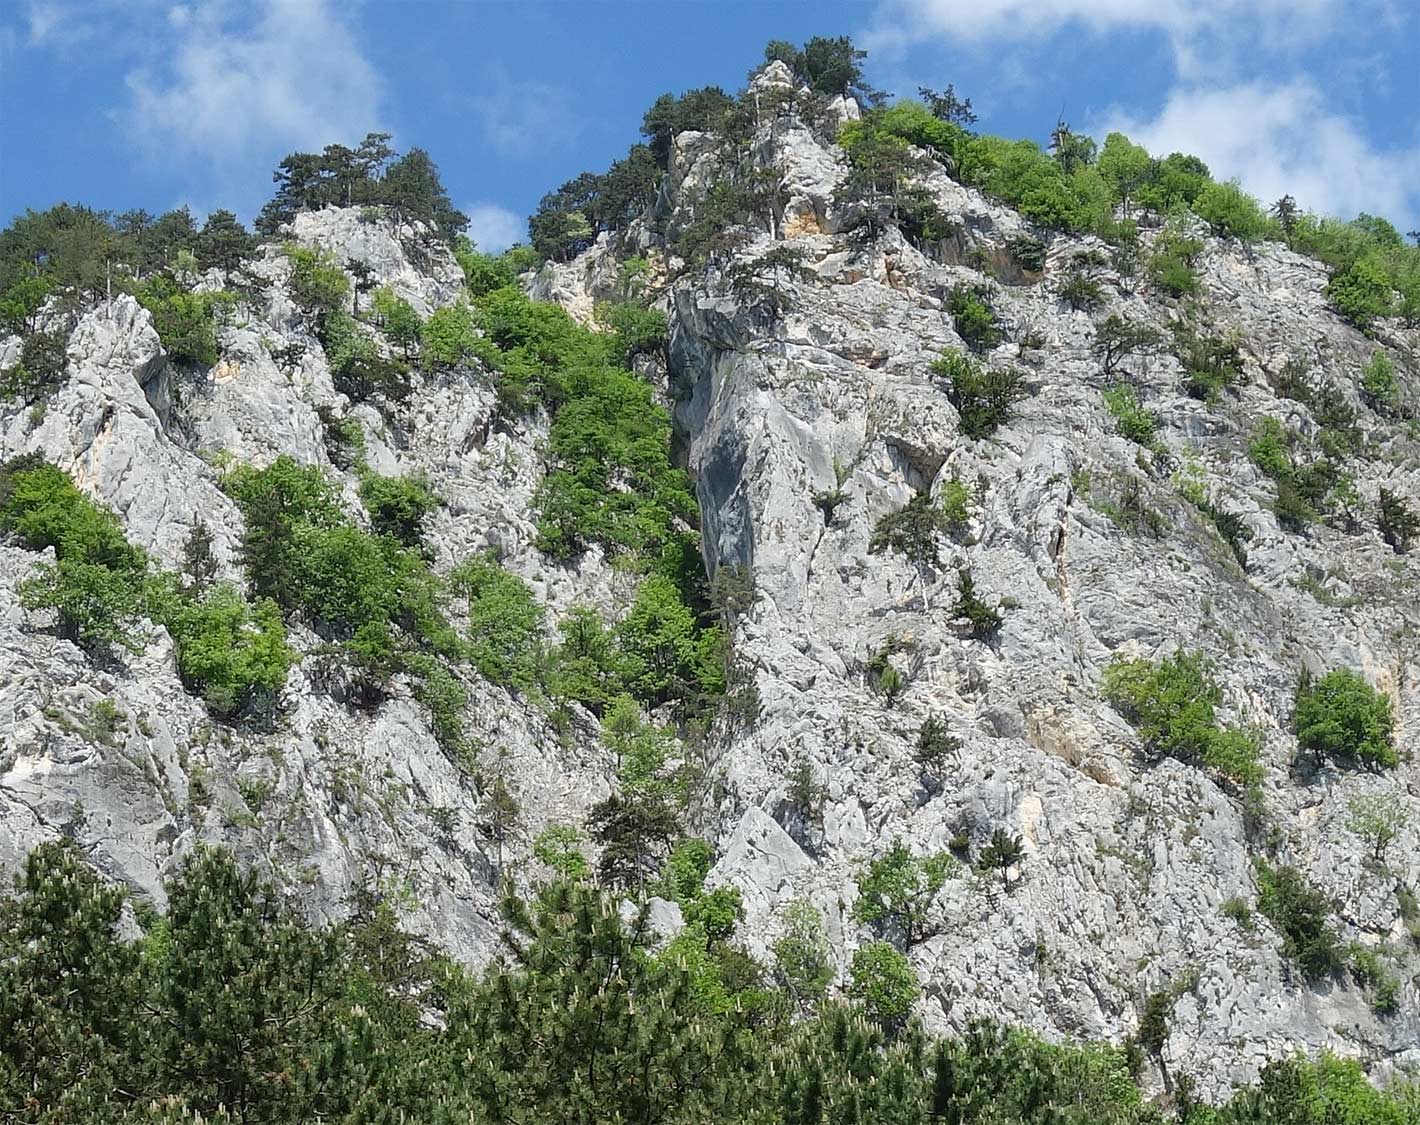 Pohľad na hrebeň Tirolergrat. V strede je hrana - nájdete ju podľa tmavosivo zafarbeného pásu naľavo a nad ňou traverz